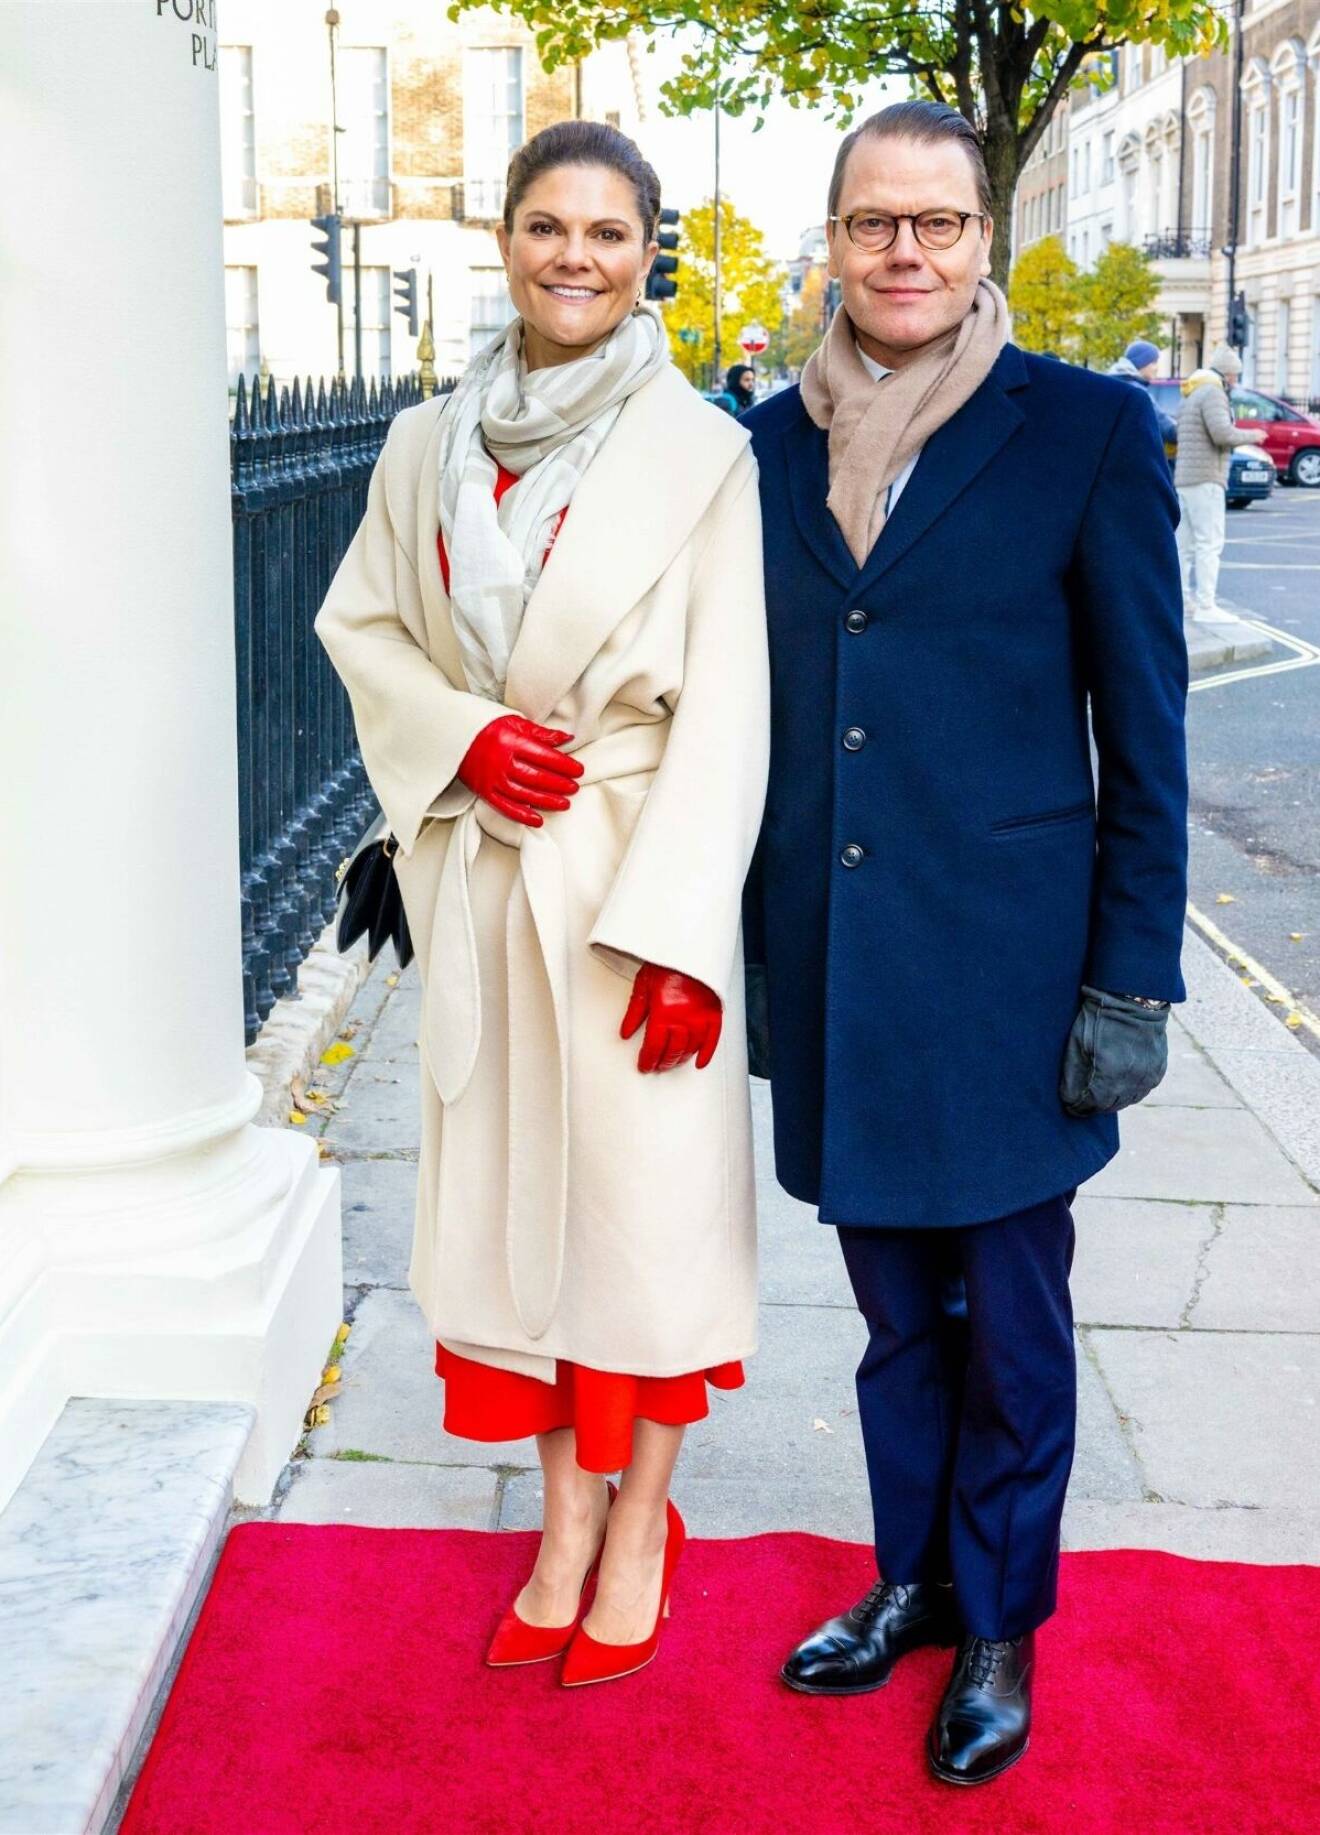 Kronprinsessan Victoria i vit kappa och prins Daniel i blå överrock under besöket i London